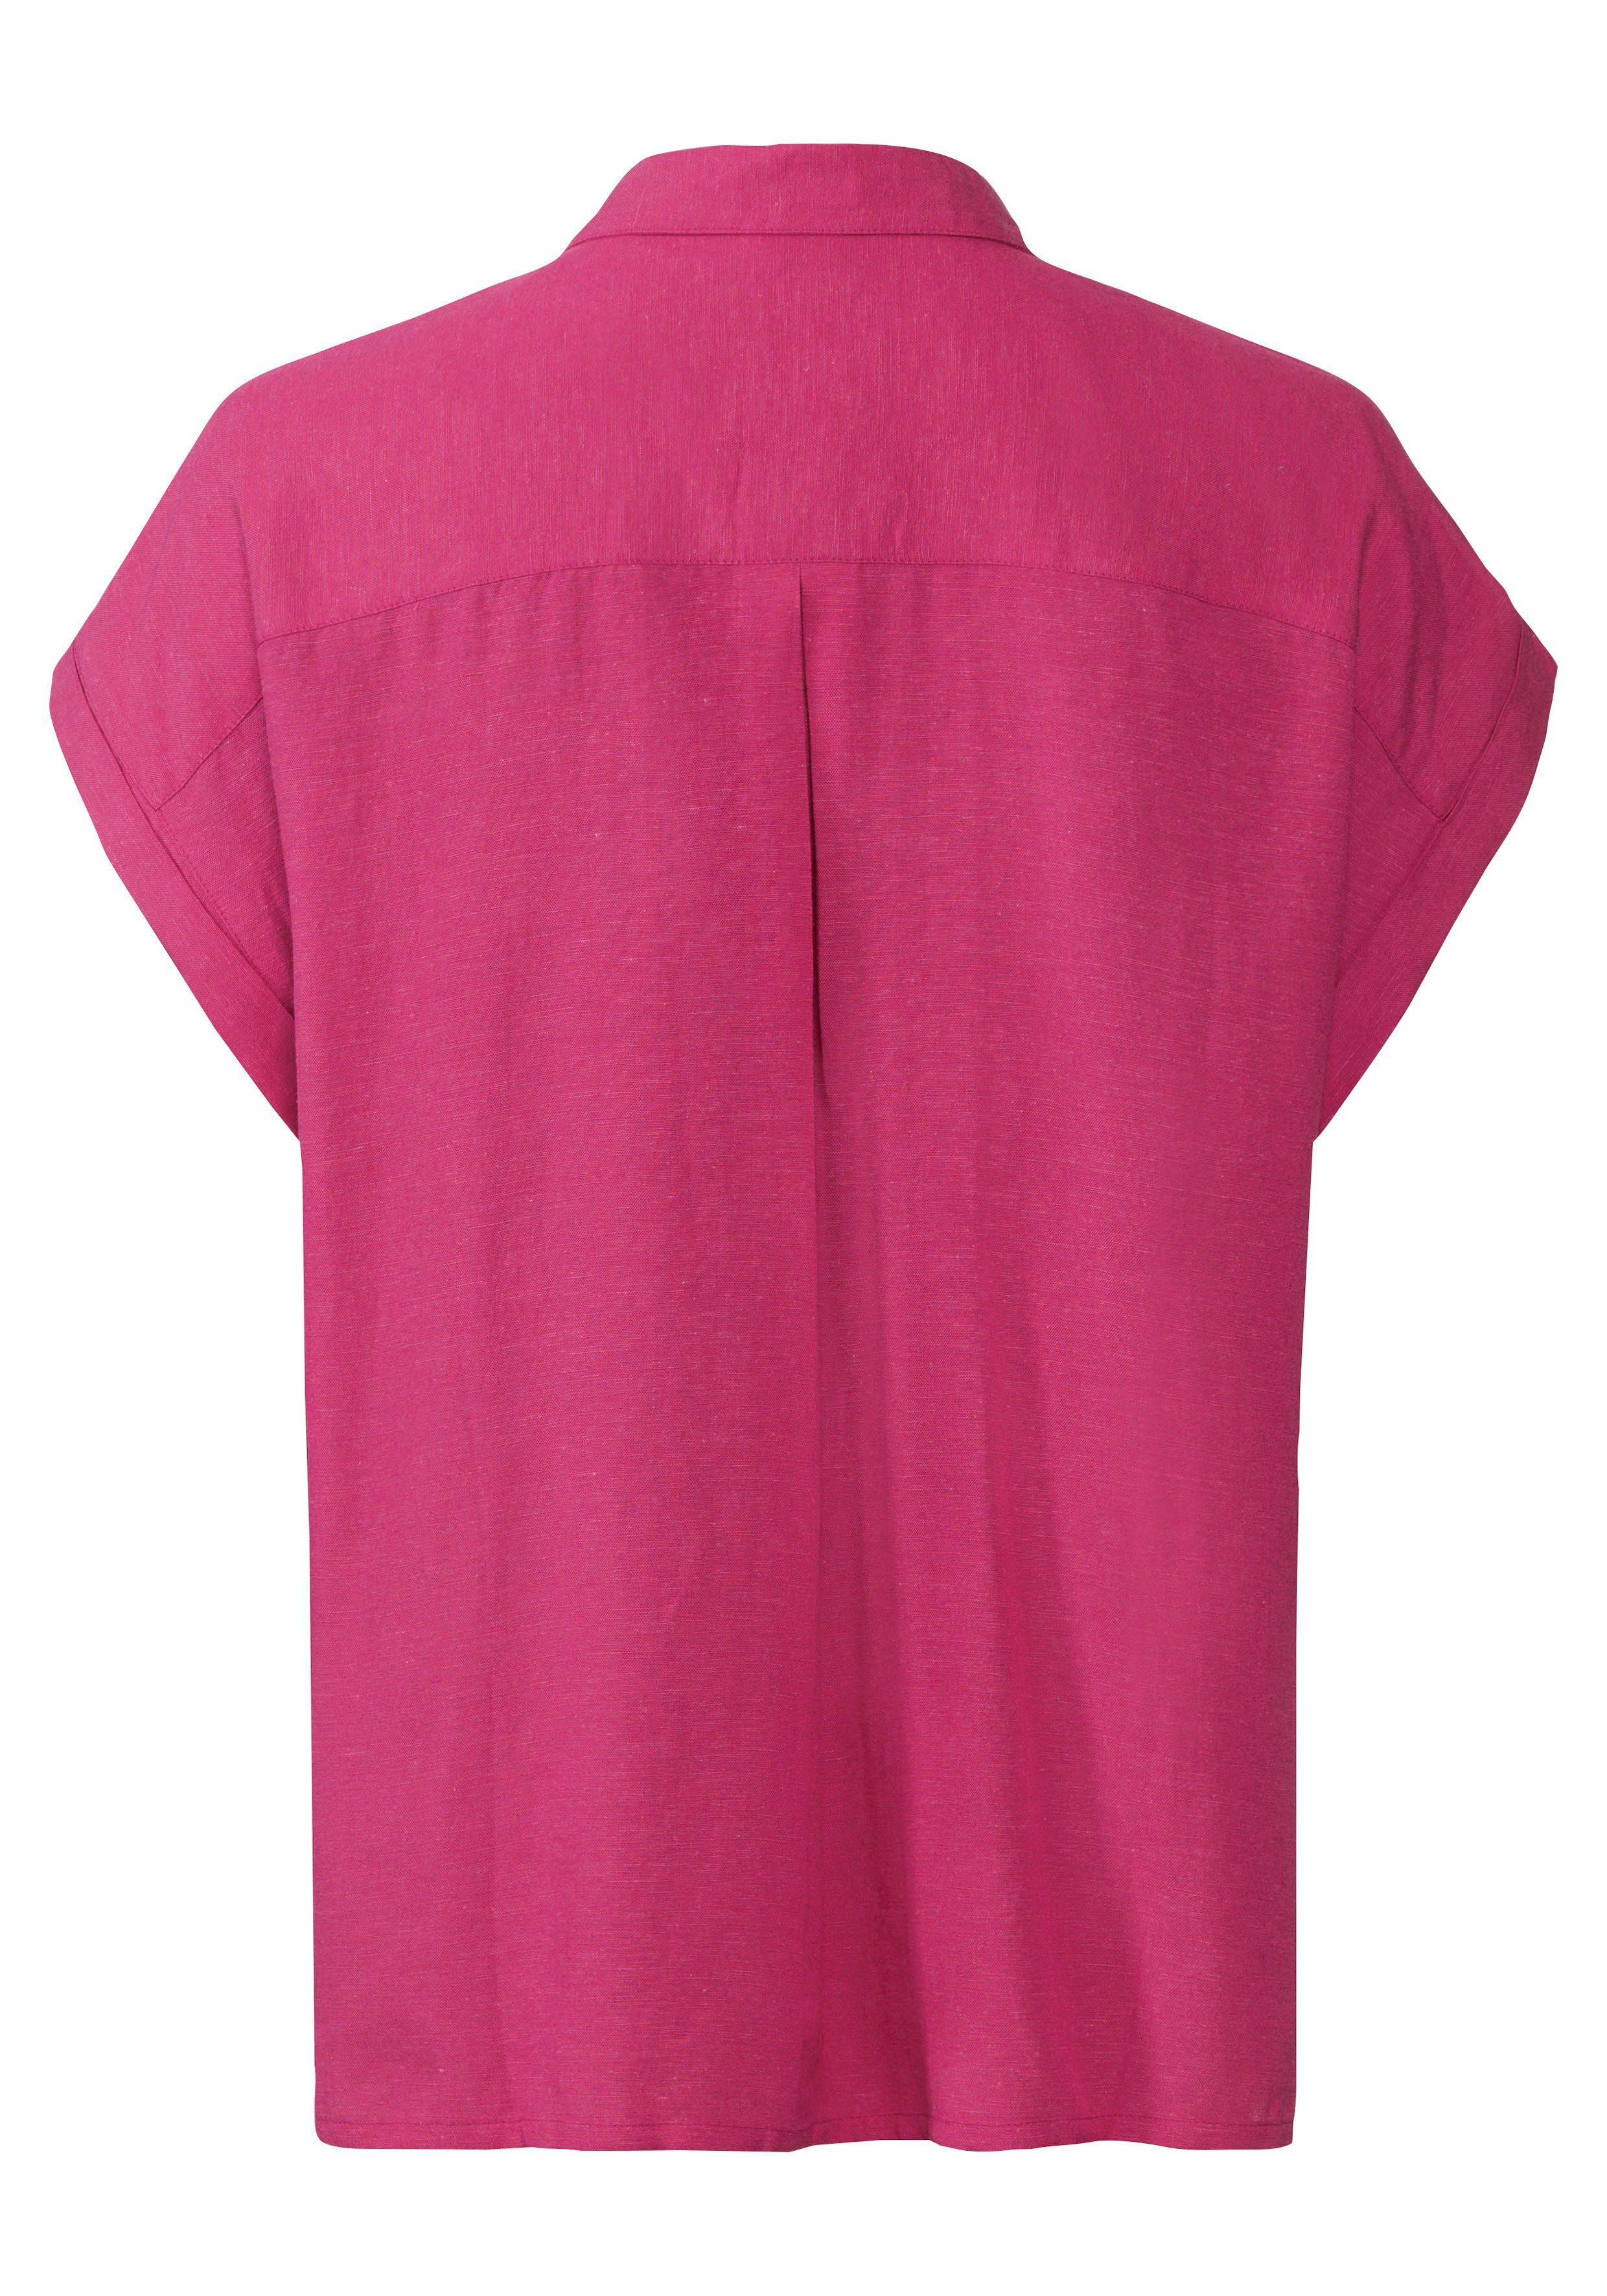 Kurzarmbluse pink Leinenmix Knopfleiste, Leinenbluse, LASCANA mit Hemdbluse aus